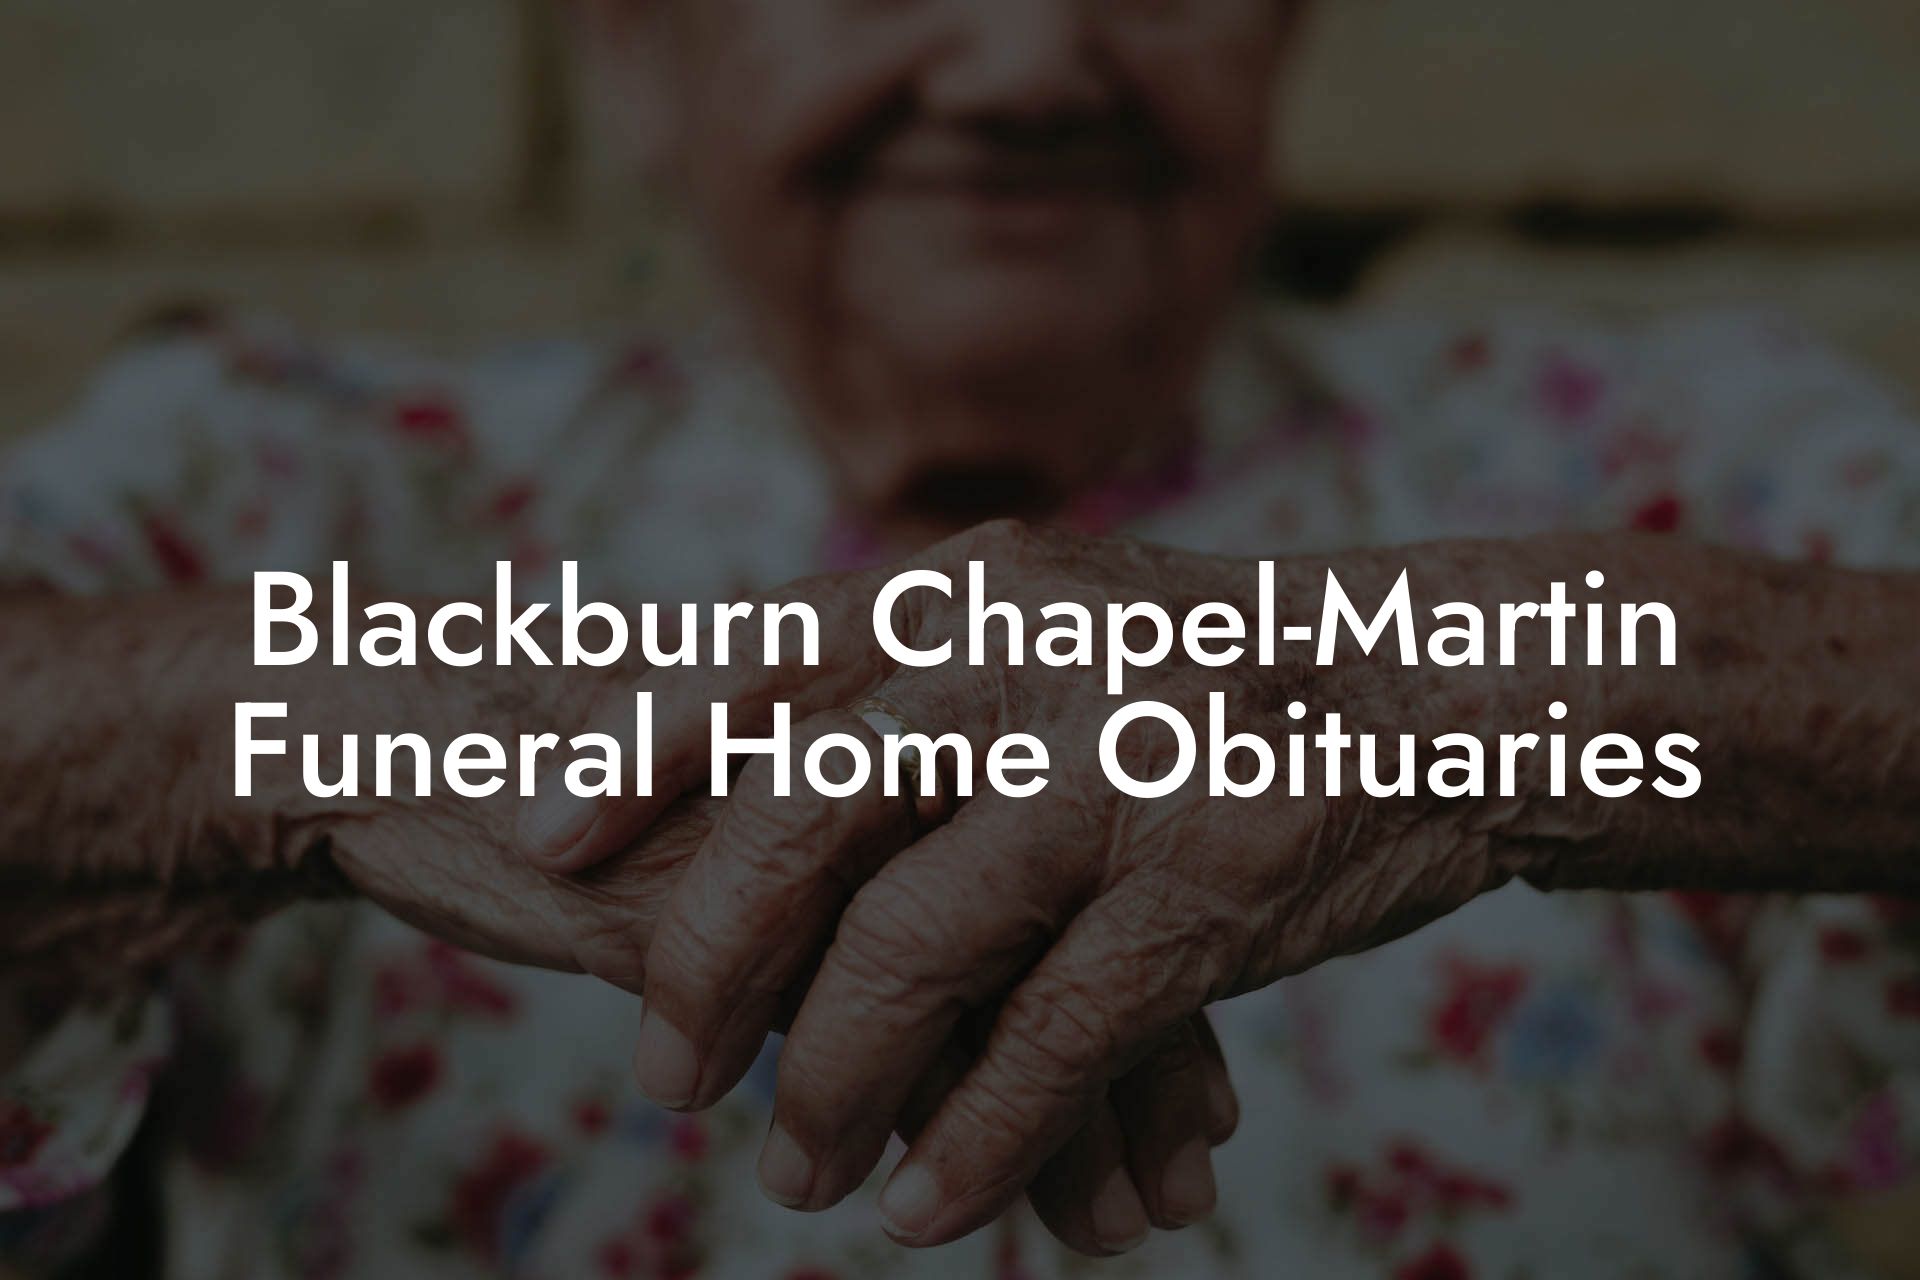 Blackburn Chapel-Martin Funeral Home Obituaries